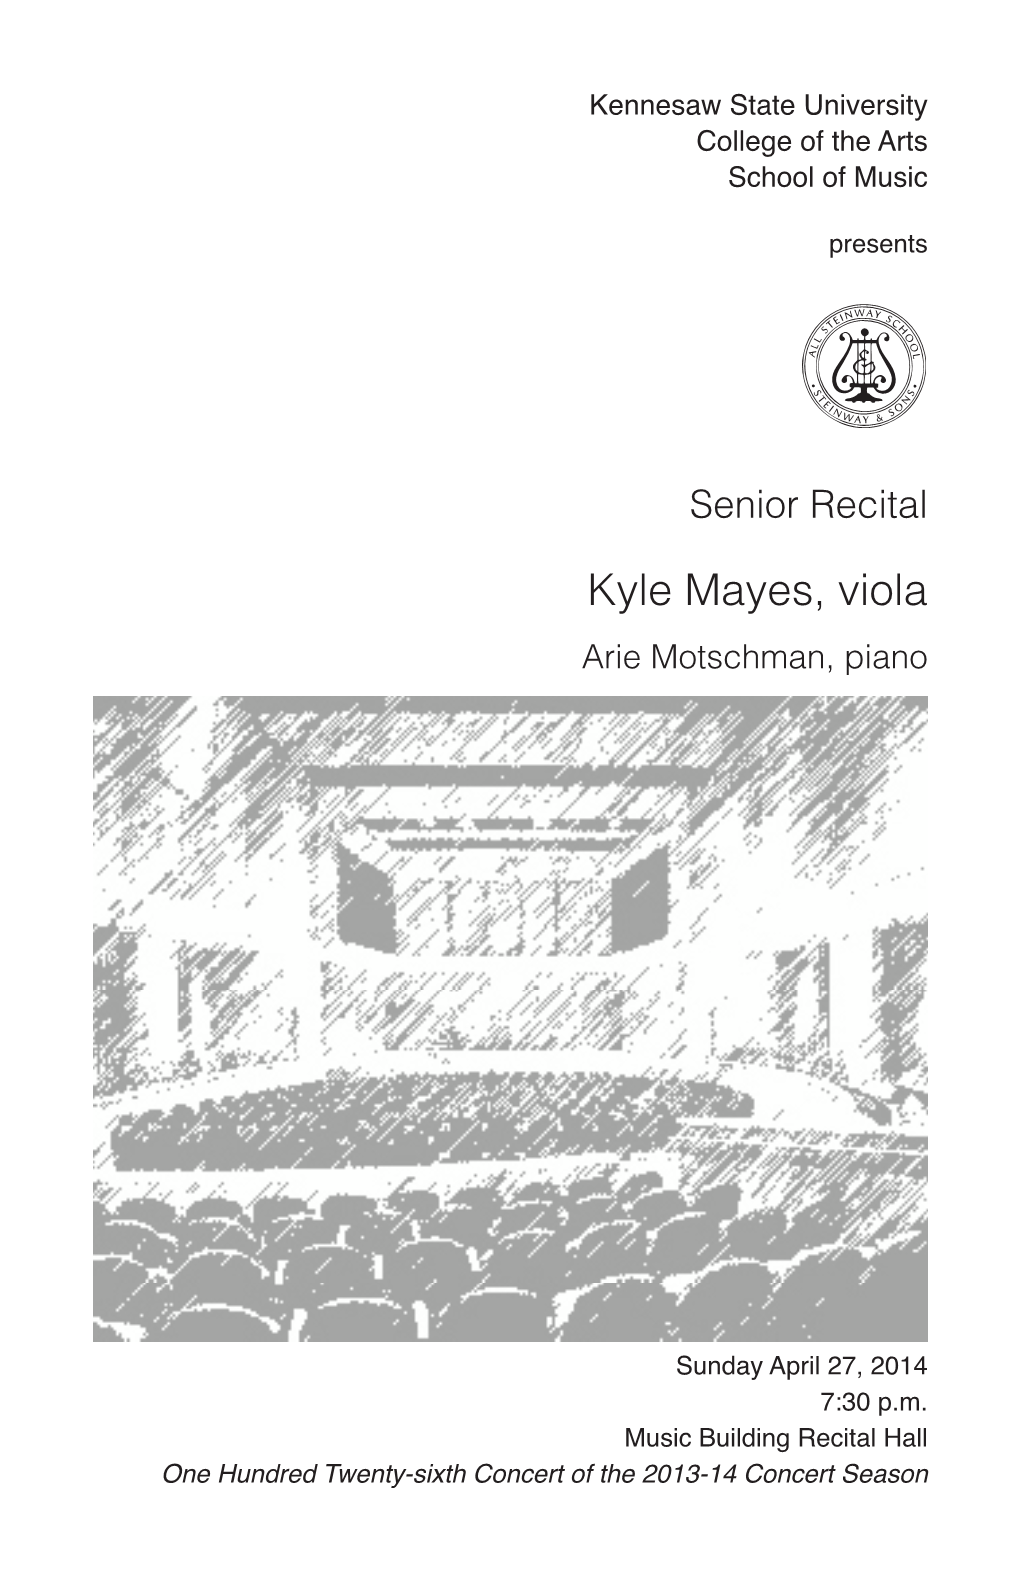 Senior Recital: Kyle Mayes, Viola